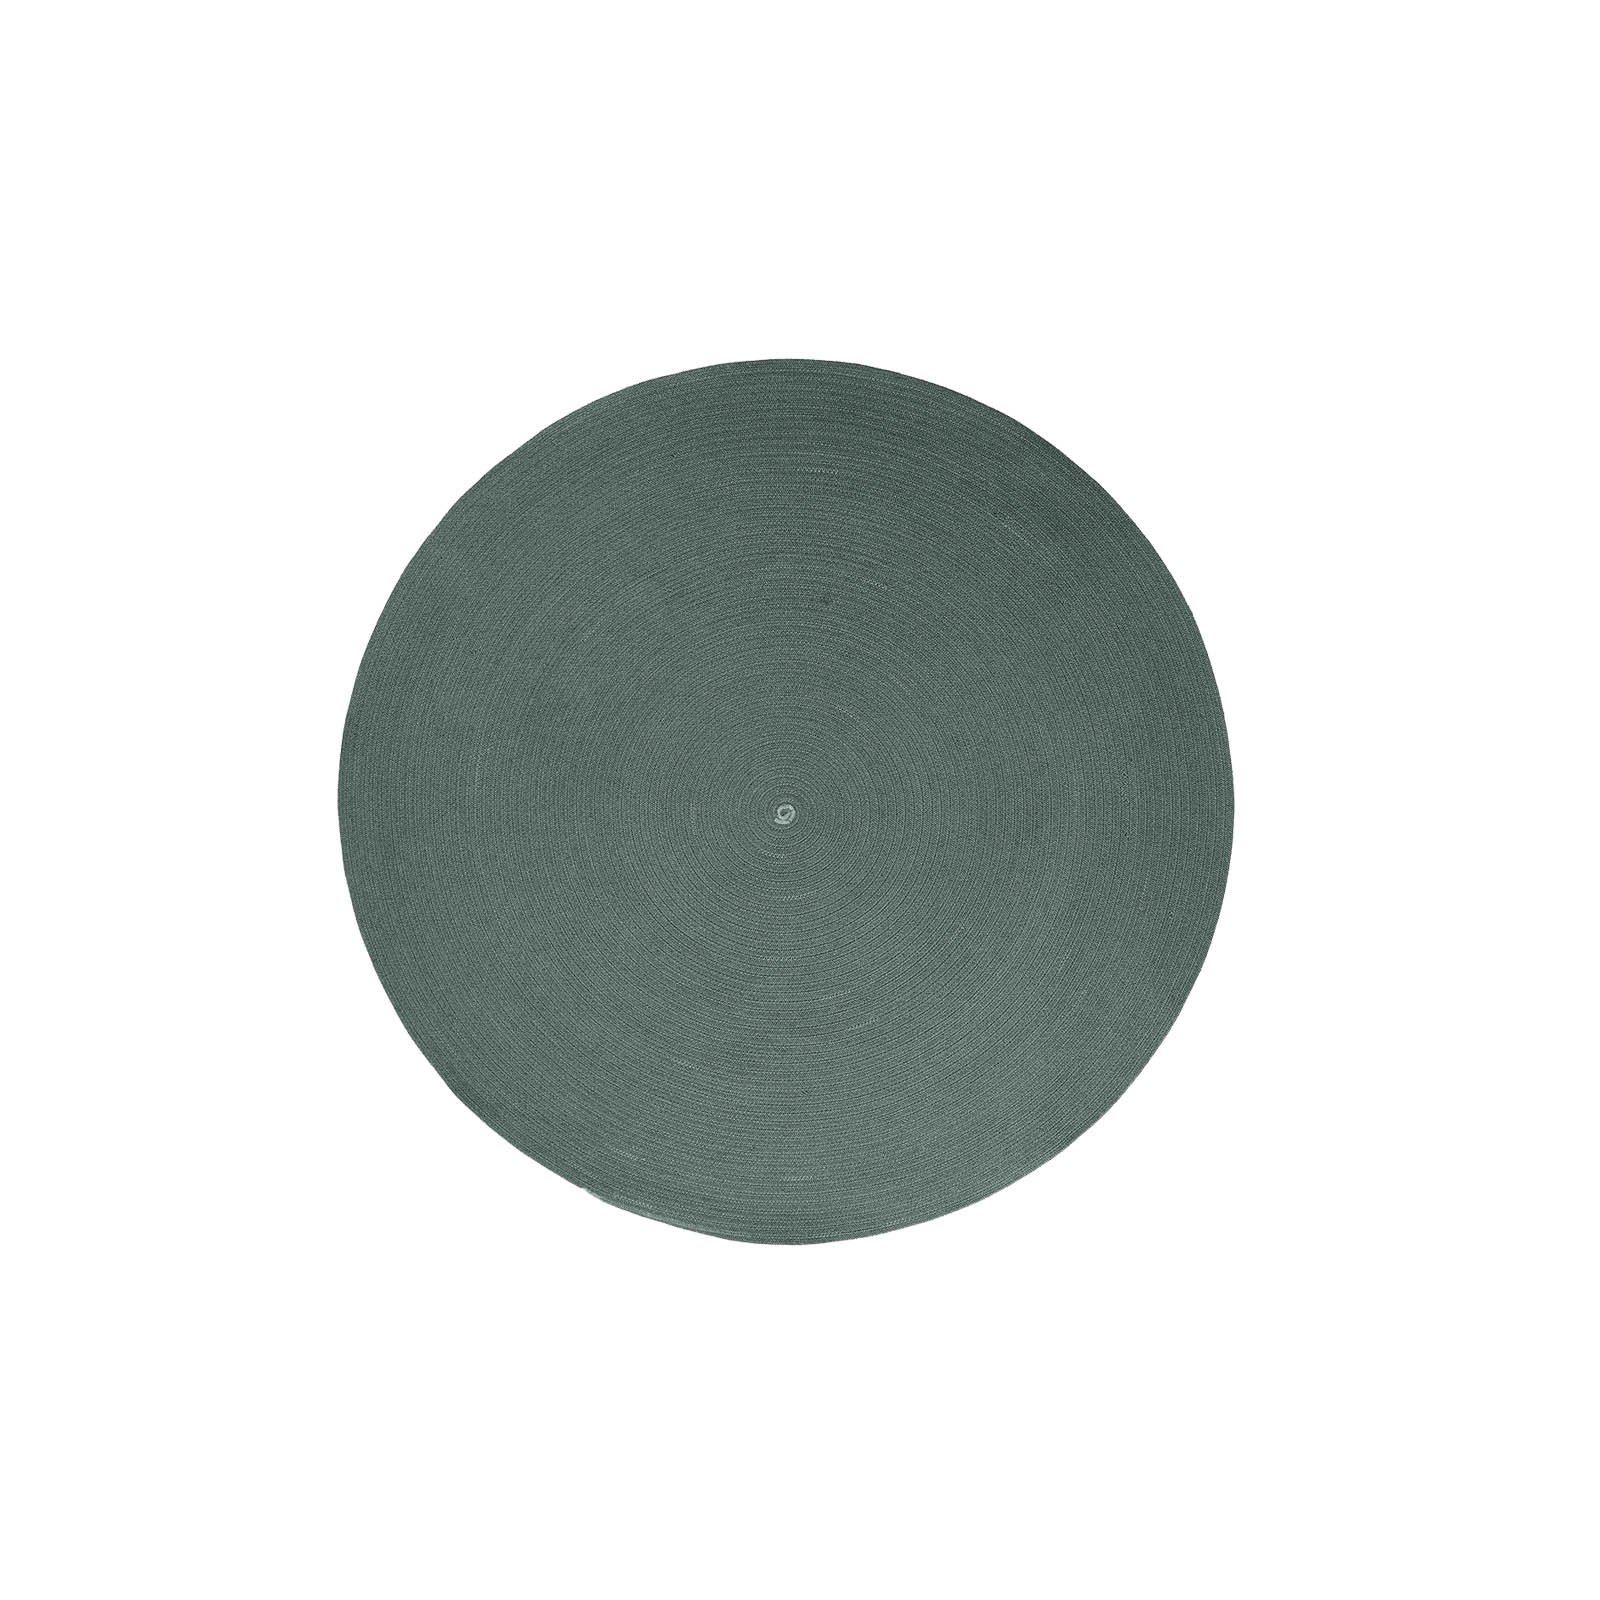 Circle Teppich Durchmesser 140 cm aus Cane-line Soft Rope in Dark Green